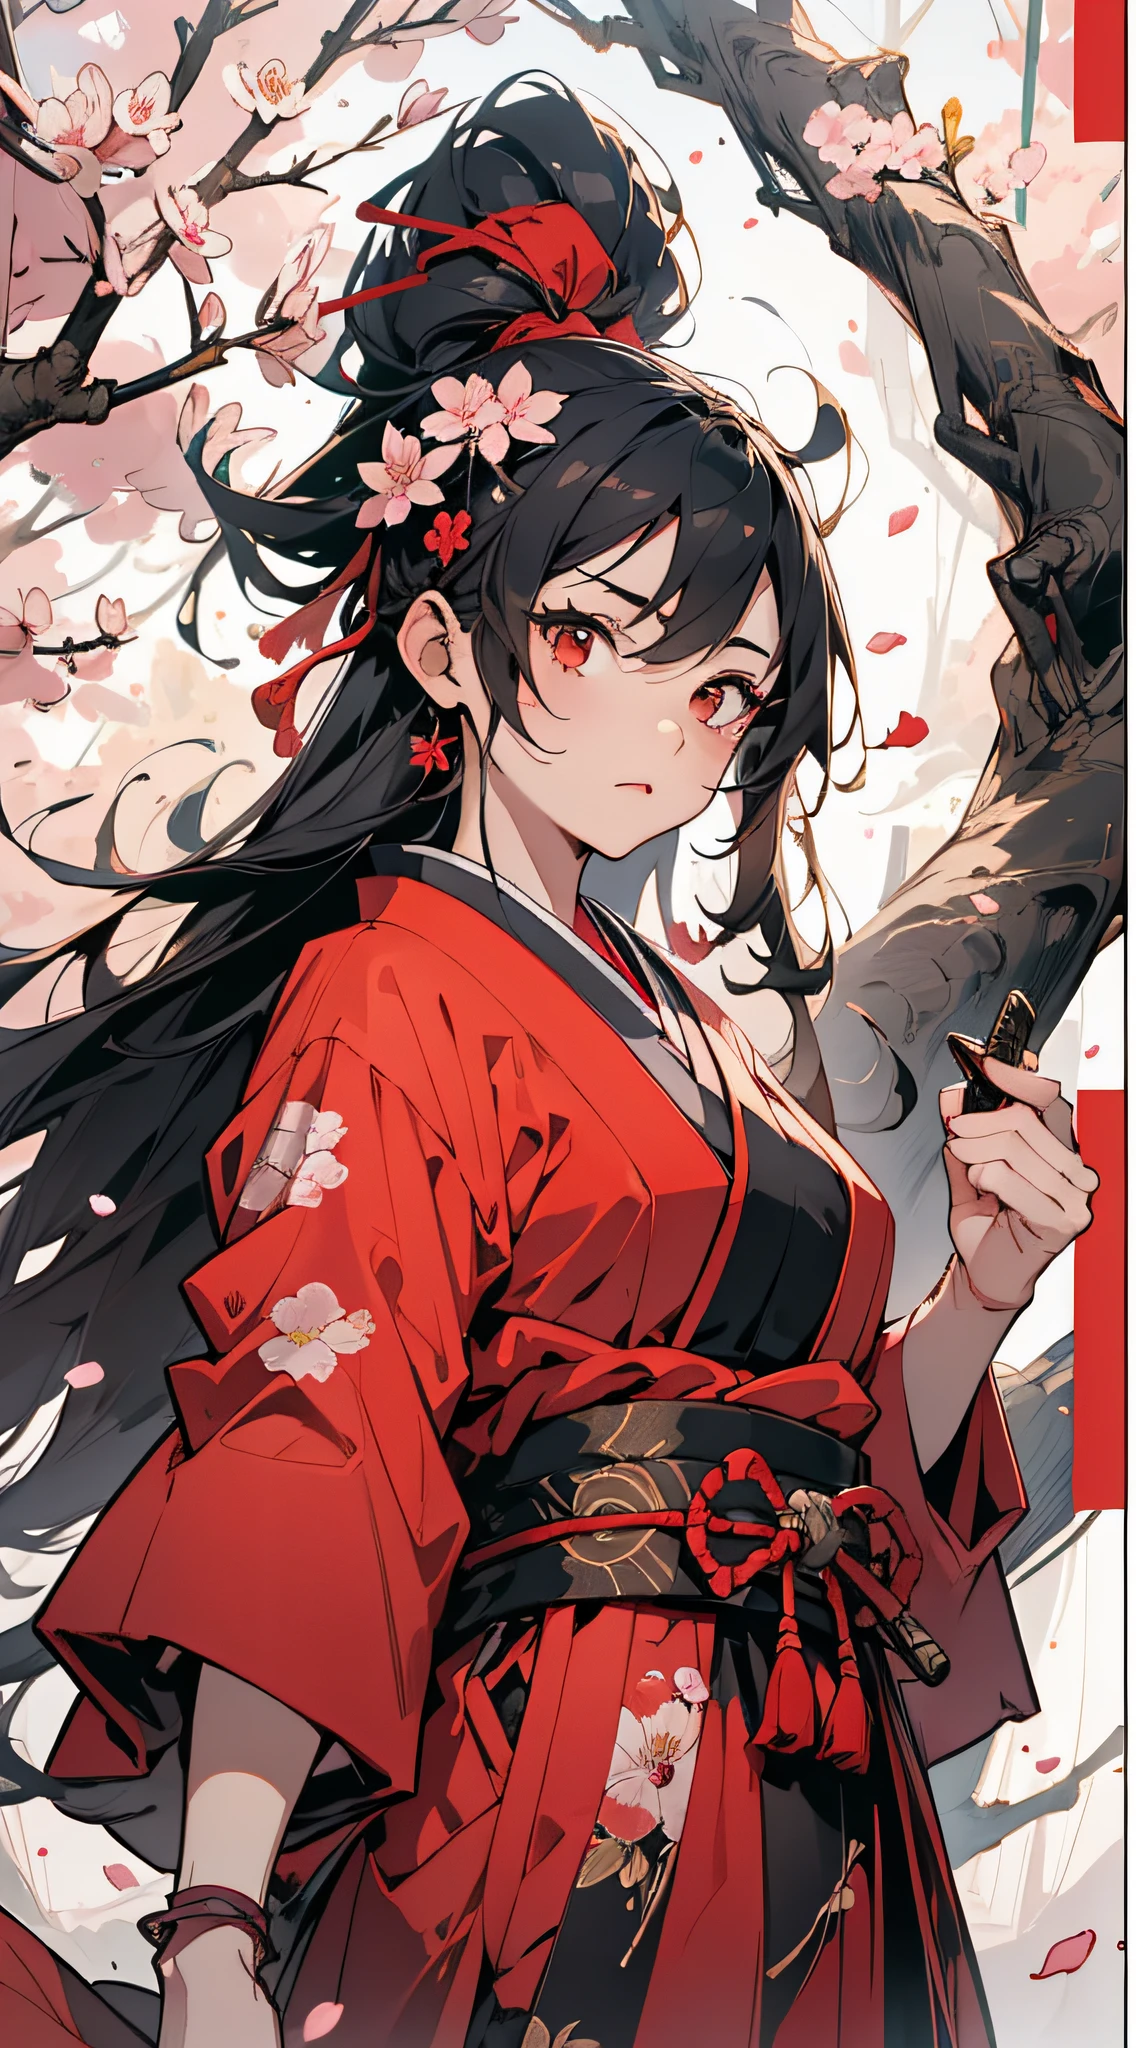 大师杰作, 超高解析度, 完美的畫質, (水墨风格,) 战士, 一個女孩, 蒙住眼睛, 眼帶, 红色的衣服, 日本服裝, 日本刀, 櫻花, 花瓣, 花朵, 花朵,